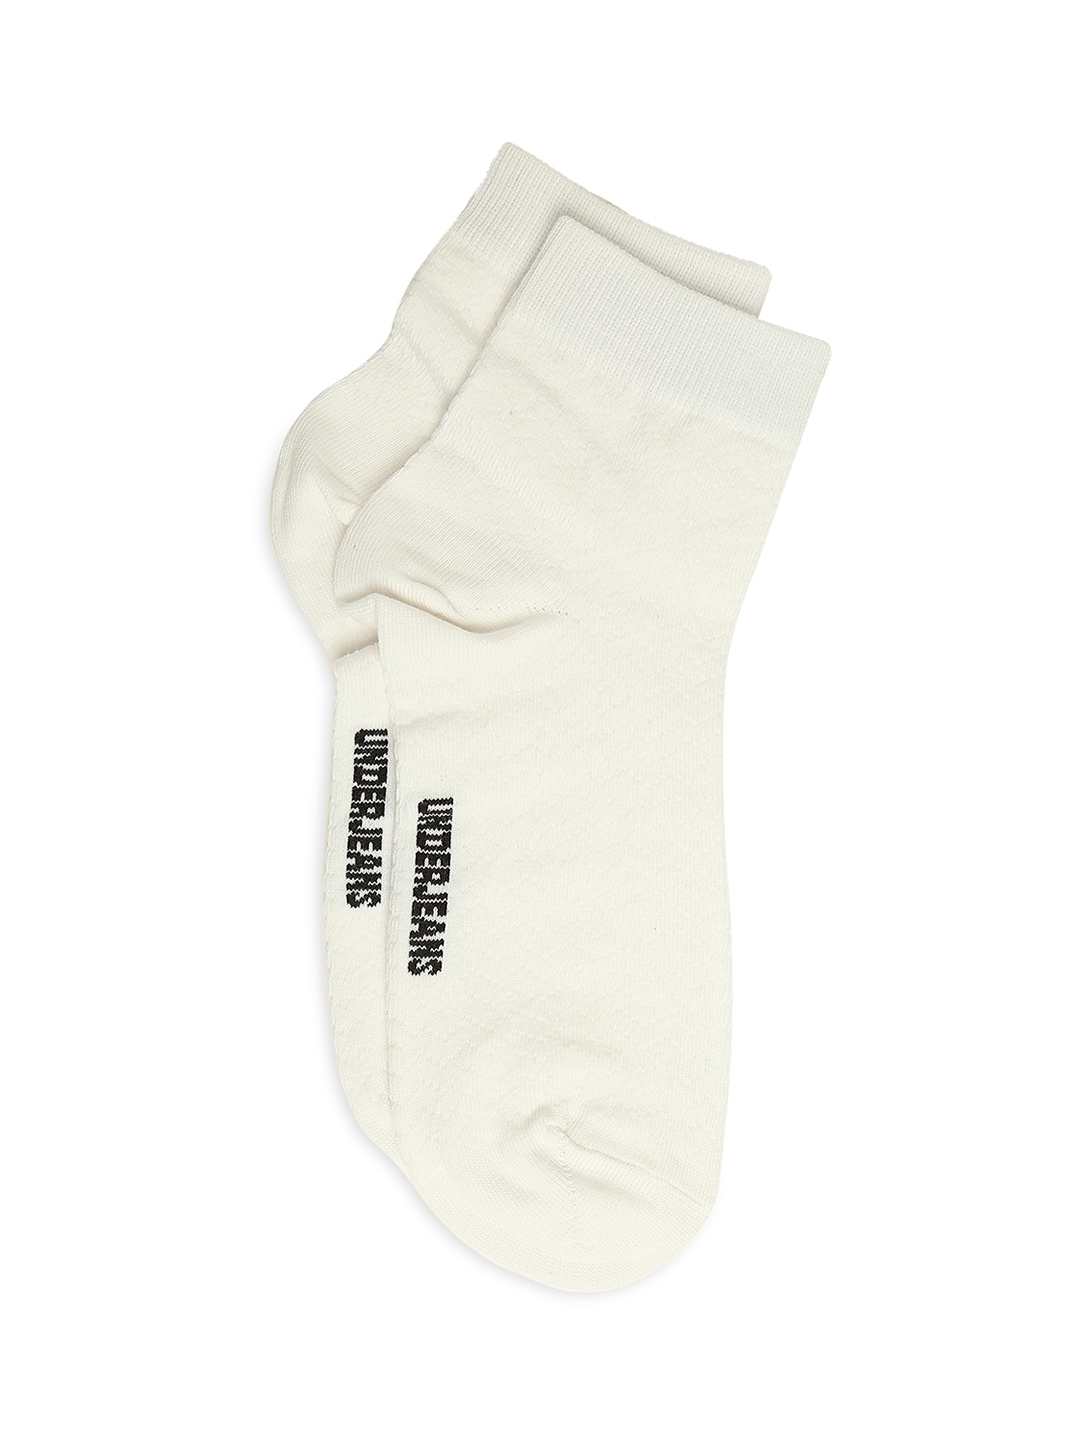 spykar | Underjeans by Spykar Premium White & Anthra Melange Ankle Length Socks - Pack Of 2 7